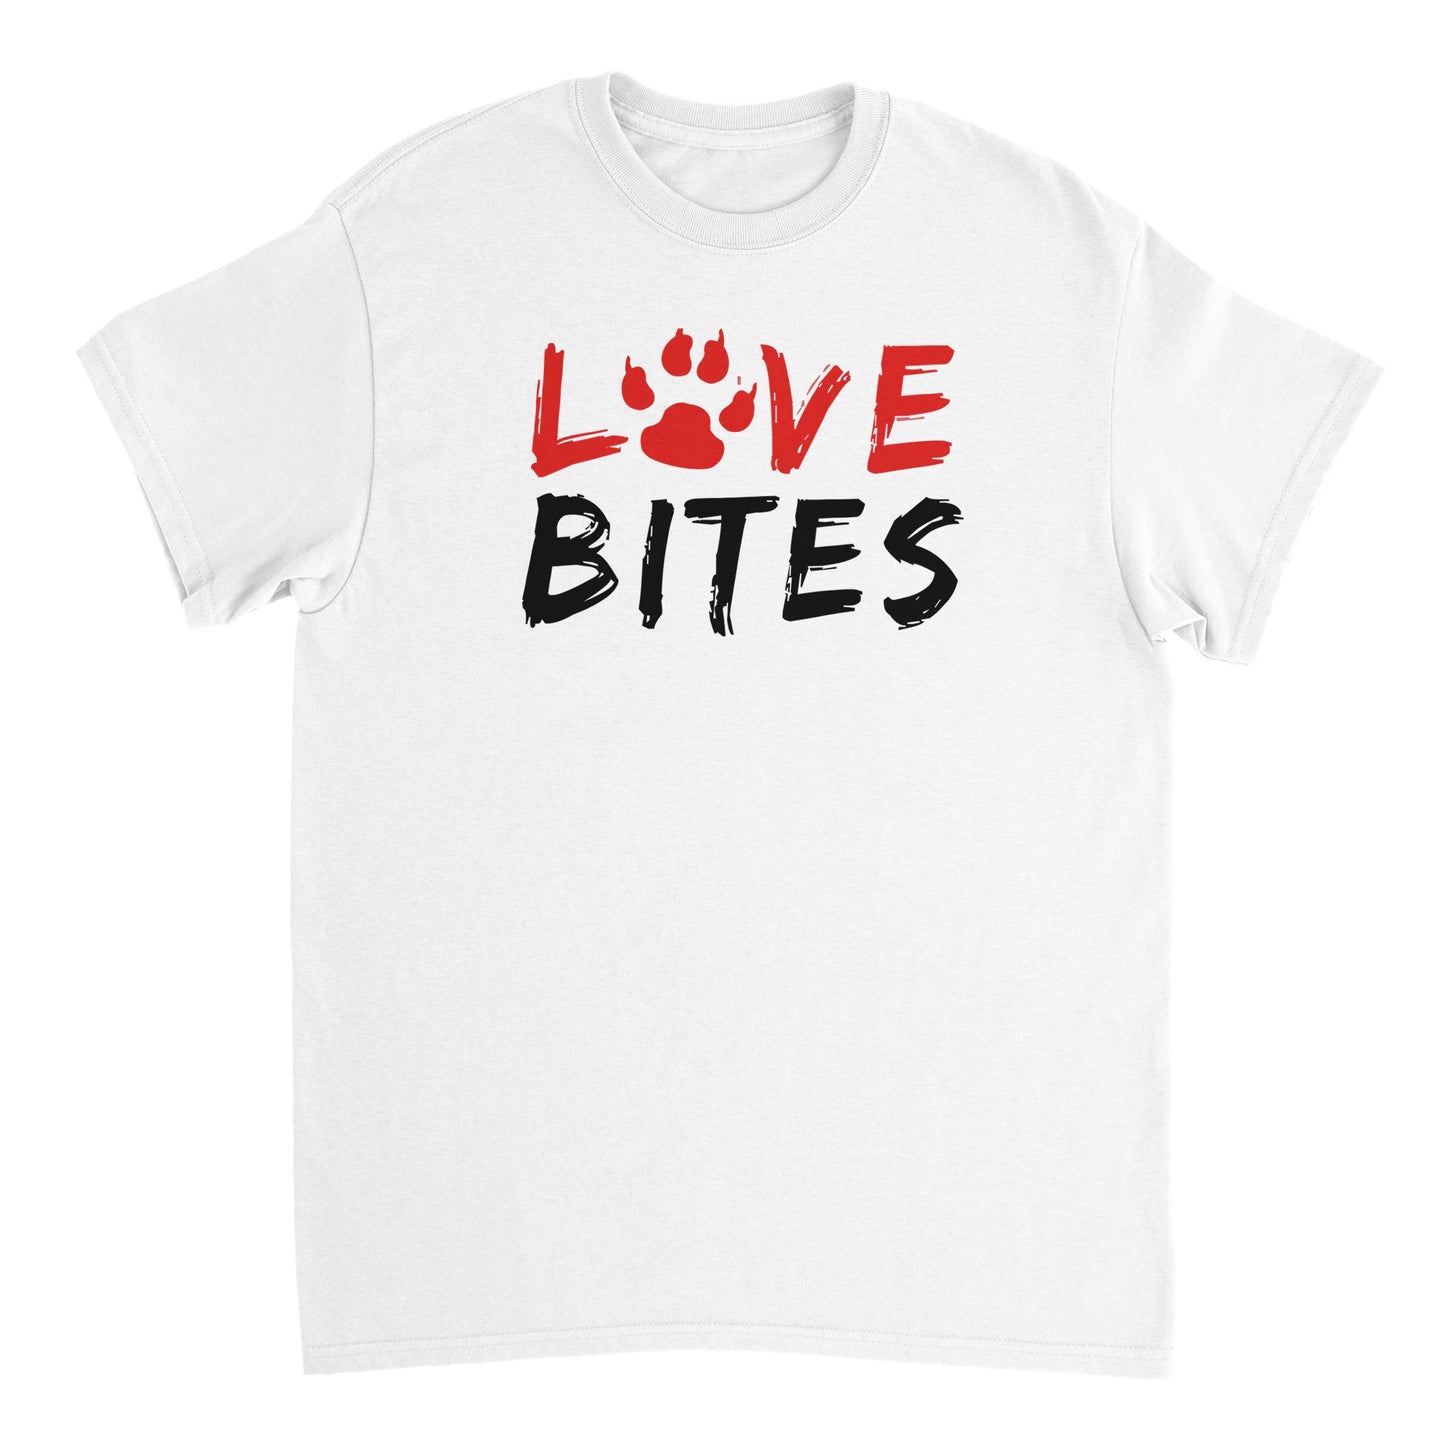 Love Bites T-shirt - Mister Snarky's